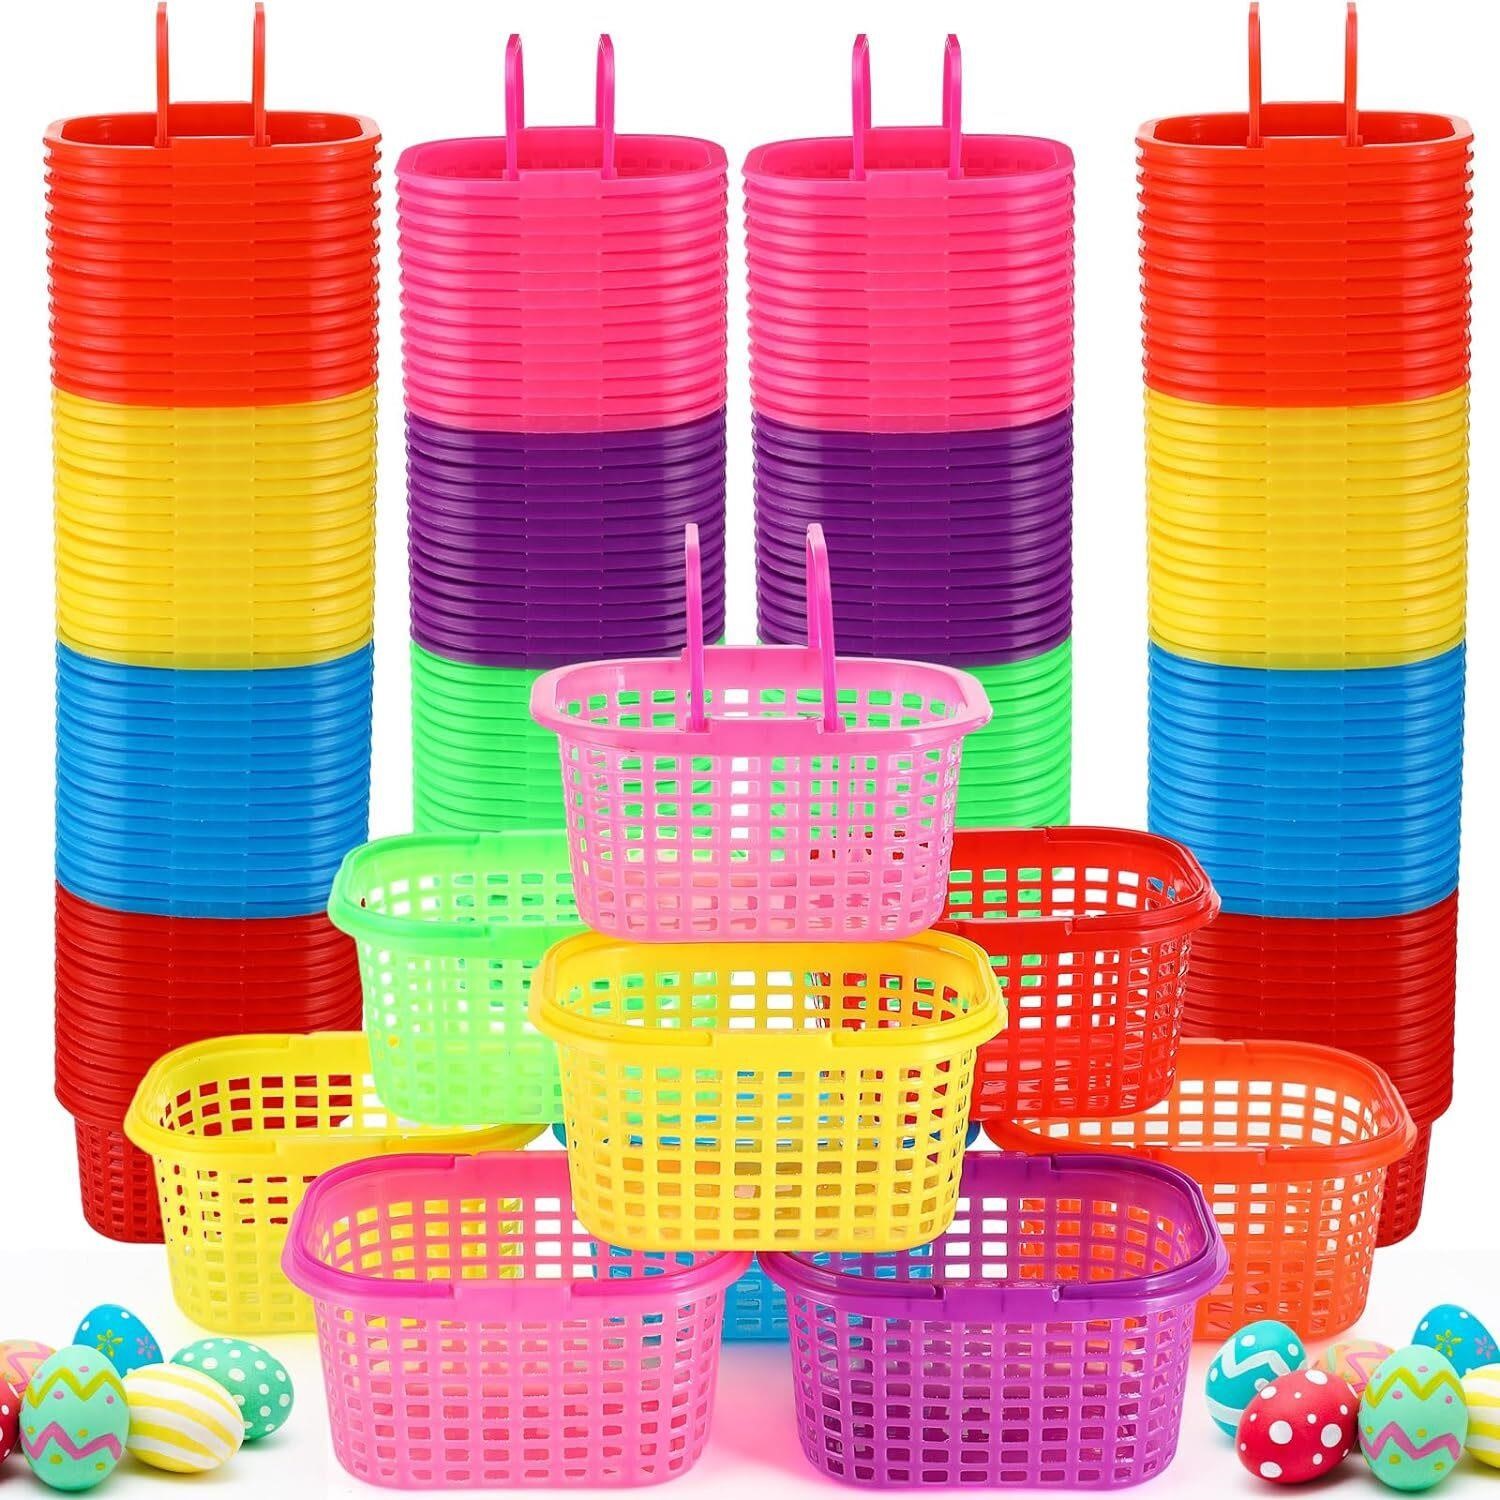 100 Pcs Egg Baskets 6.7x5.11x3.5  7 Colors